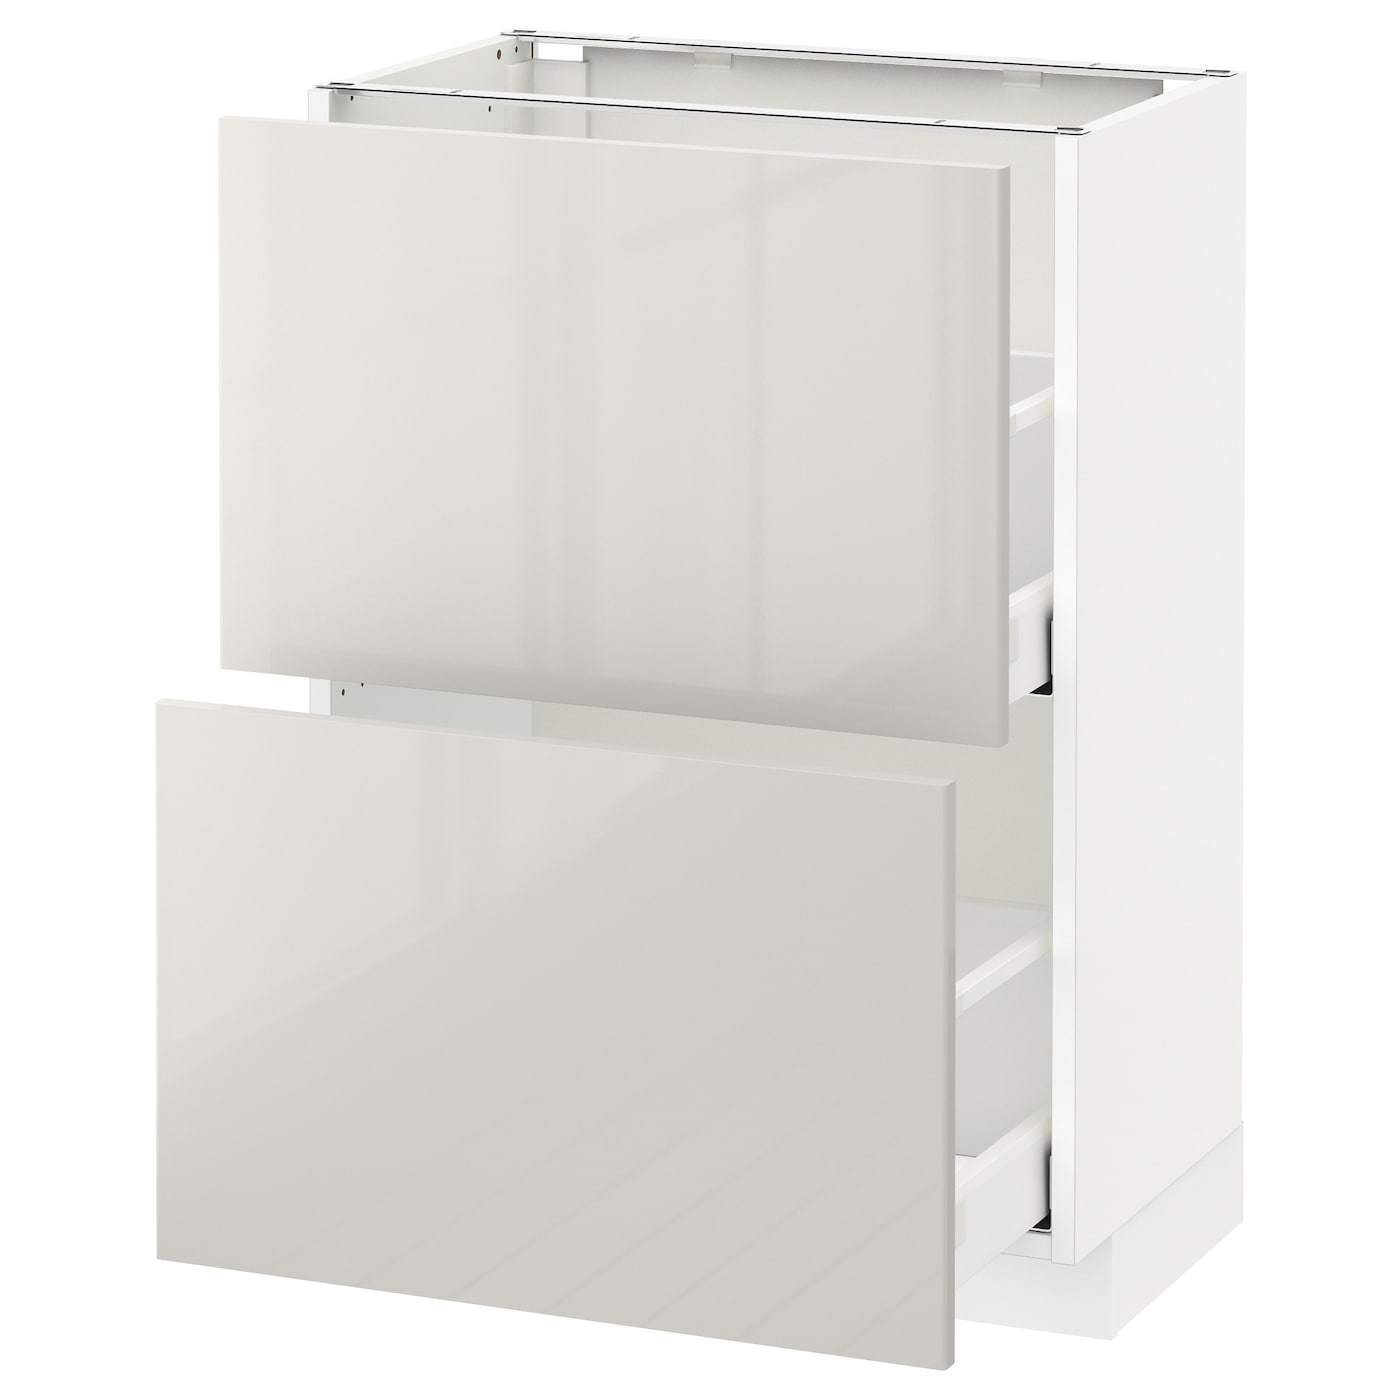 Напольный шкаф - IKEA METOD MAXIMERA, 88x39x60см, белый/светло-серый, МЕТОД МАКСИМЕРА ИКЕА